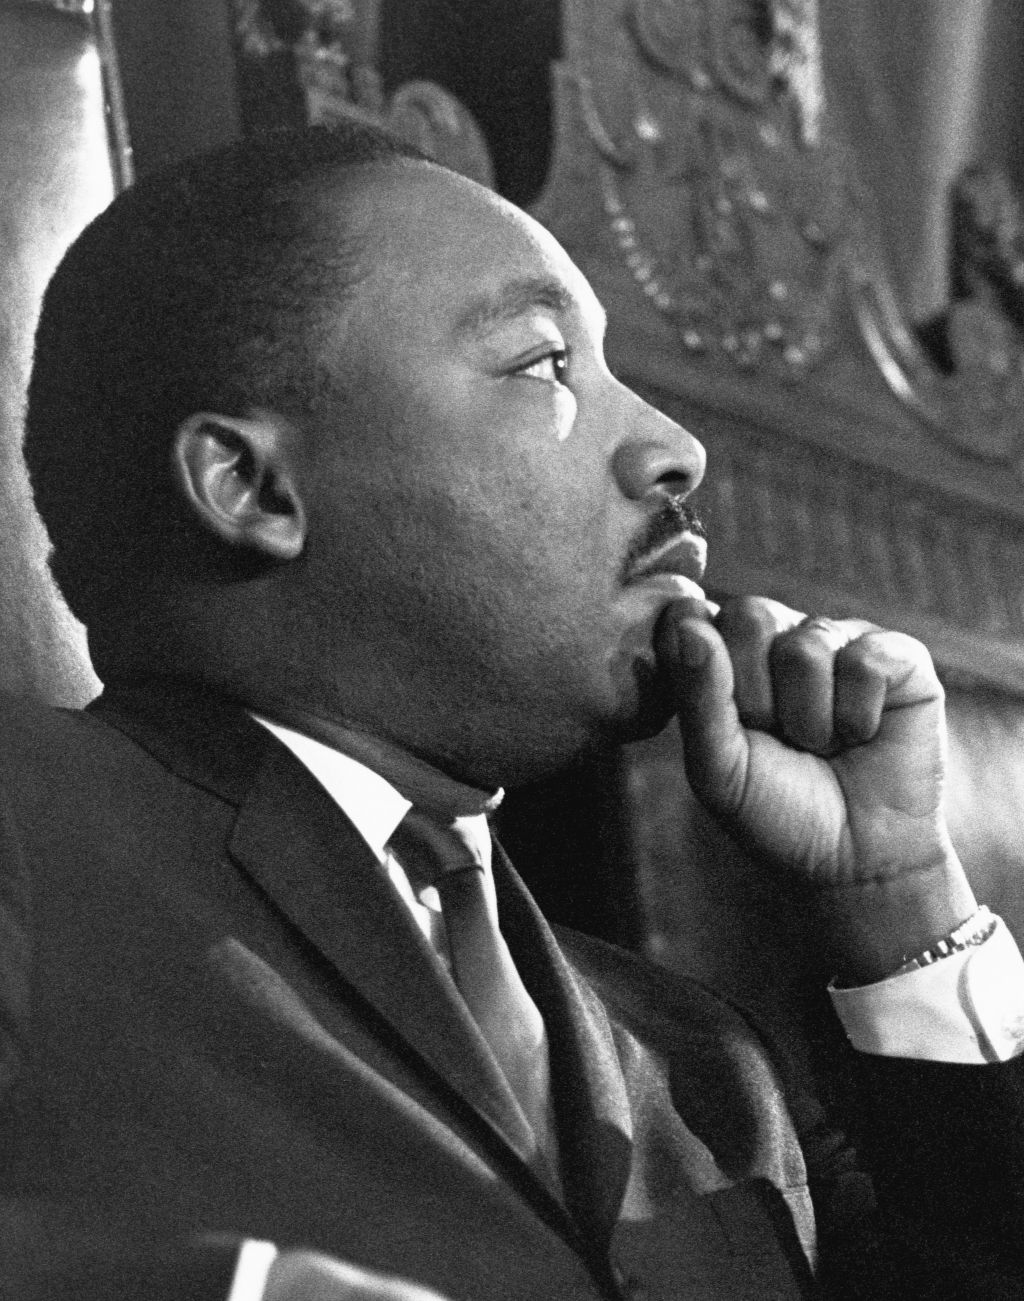 Martin Luther King Jr. Before a Speech